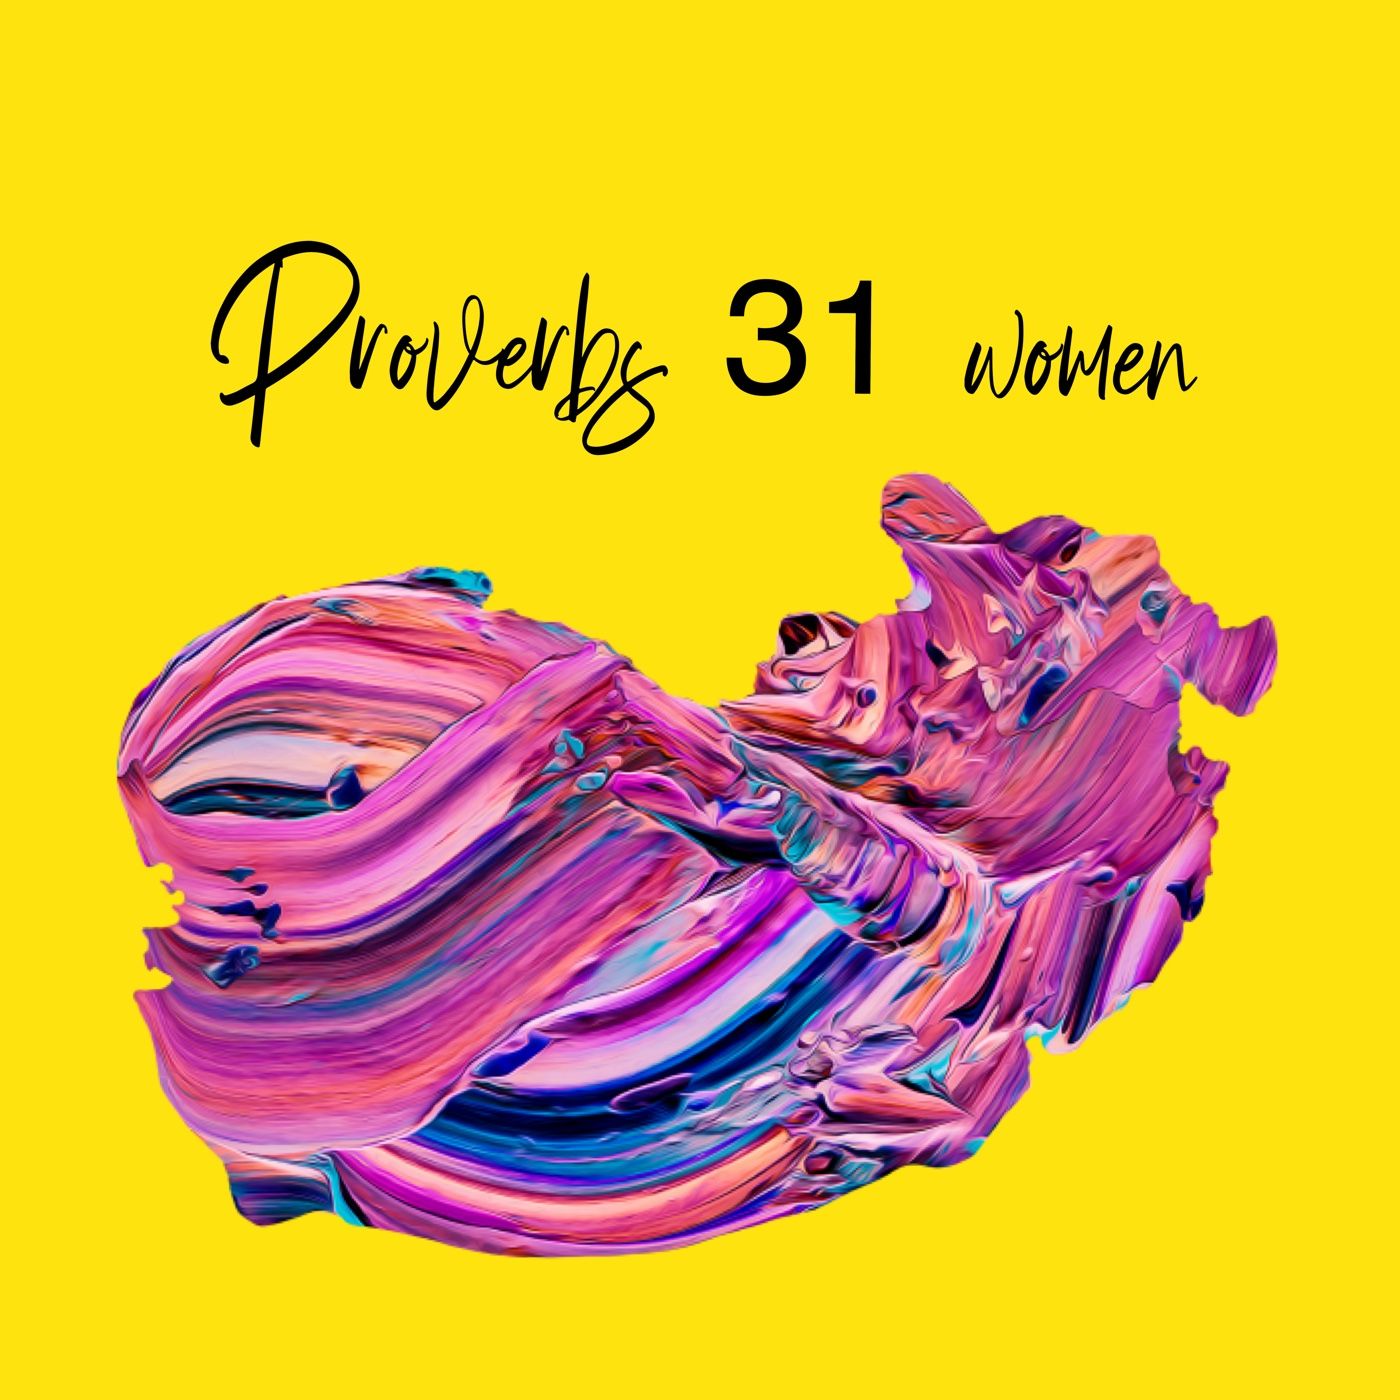 Proverbs 31 Women